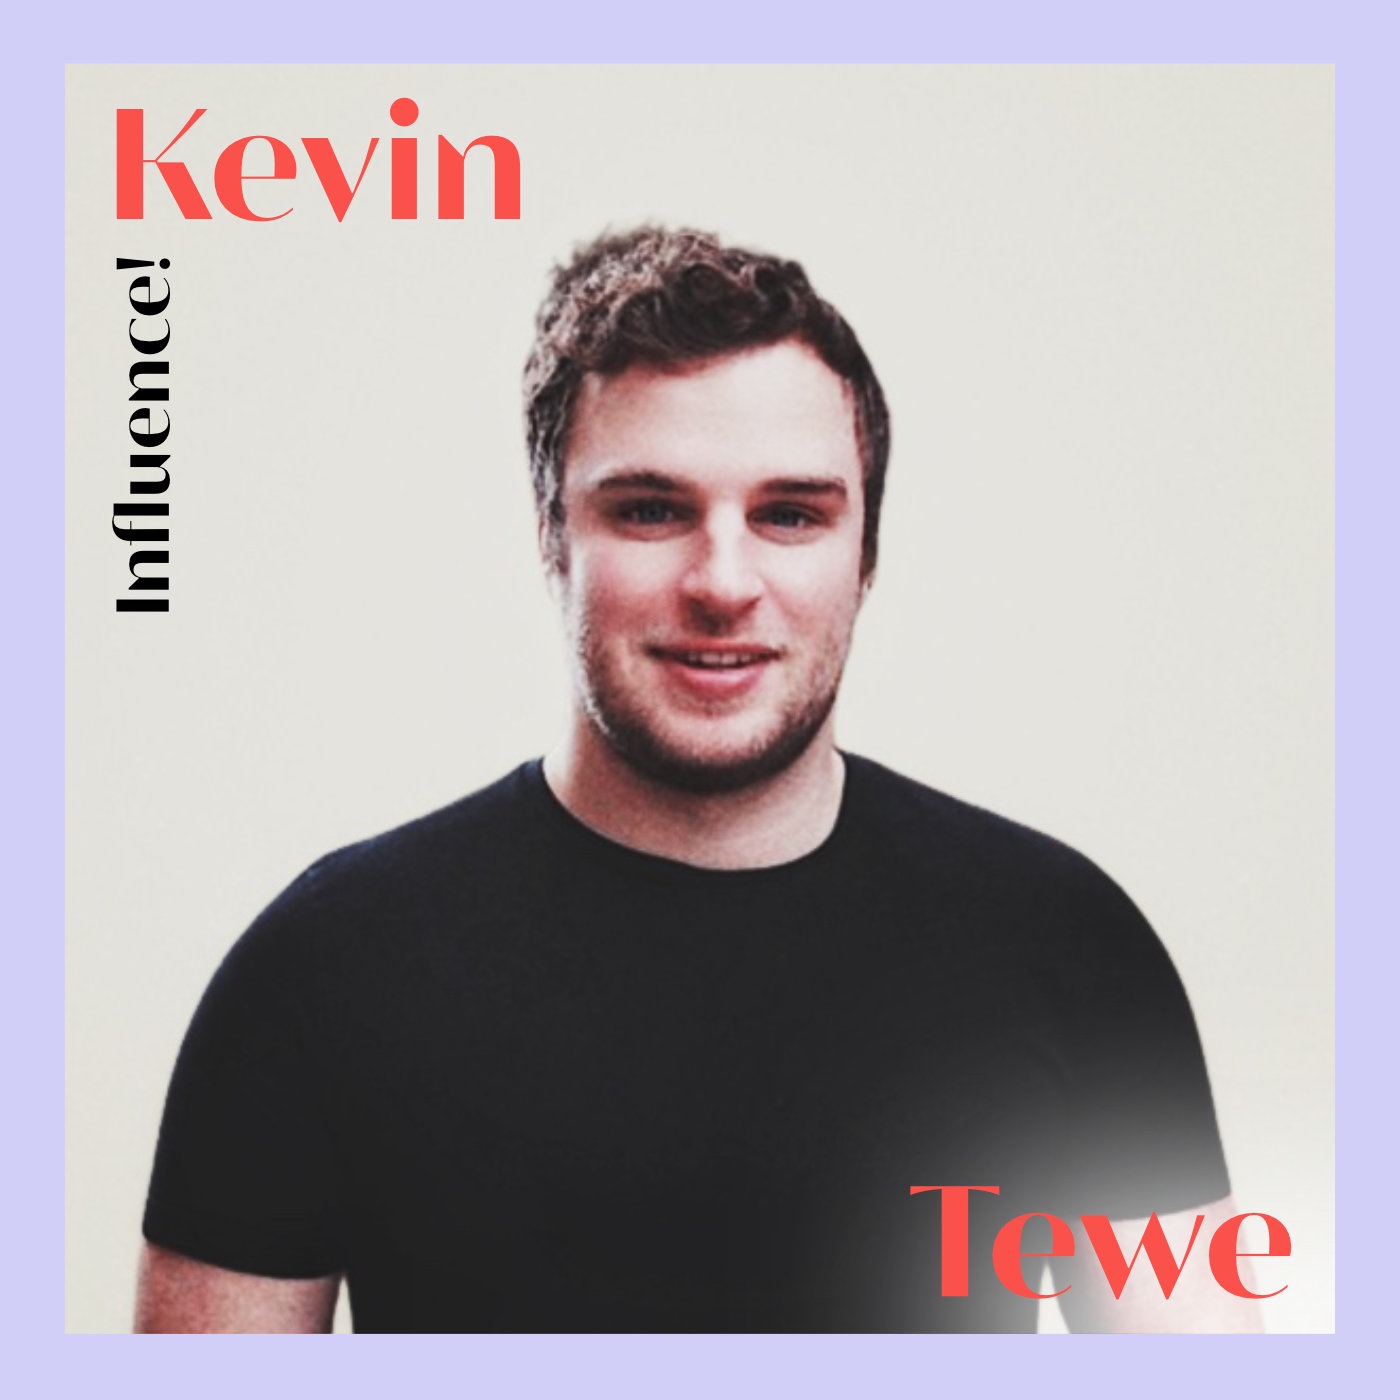 #87 | Kevin Tewe, wie positionieren sich Rezo, Diana zur Löwen & Co. in der Creator Economy?